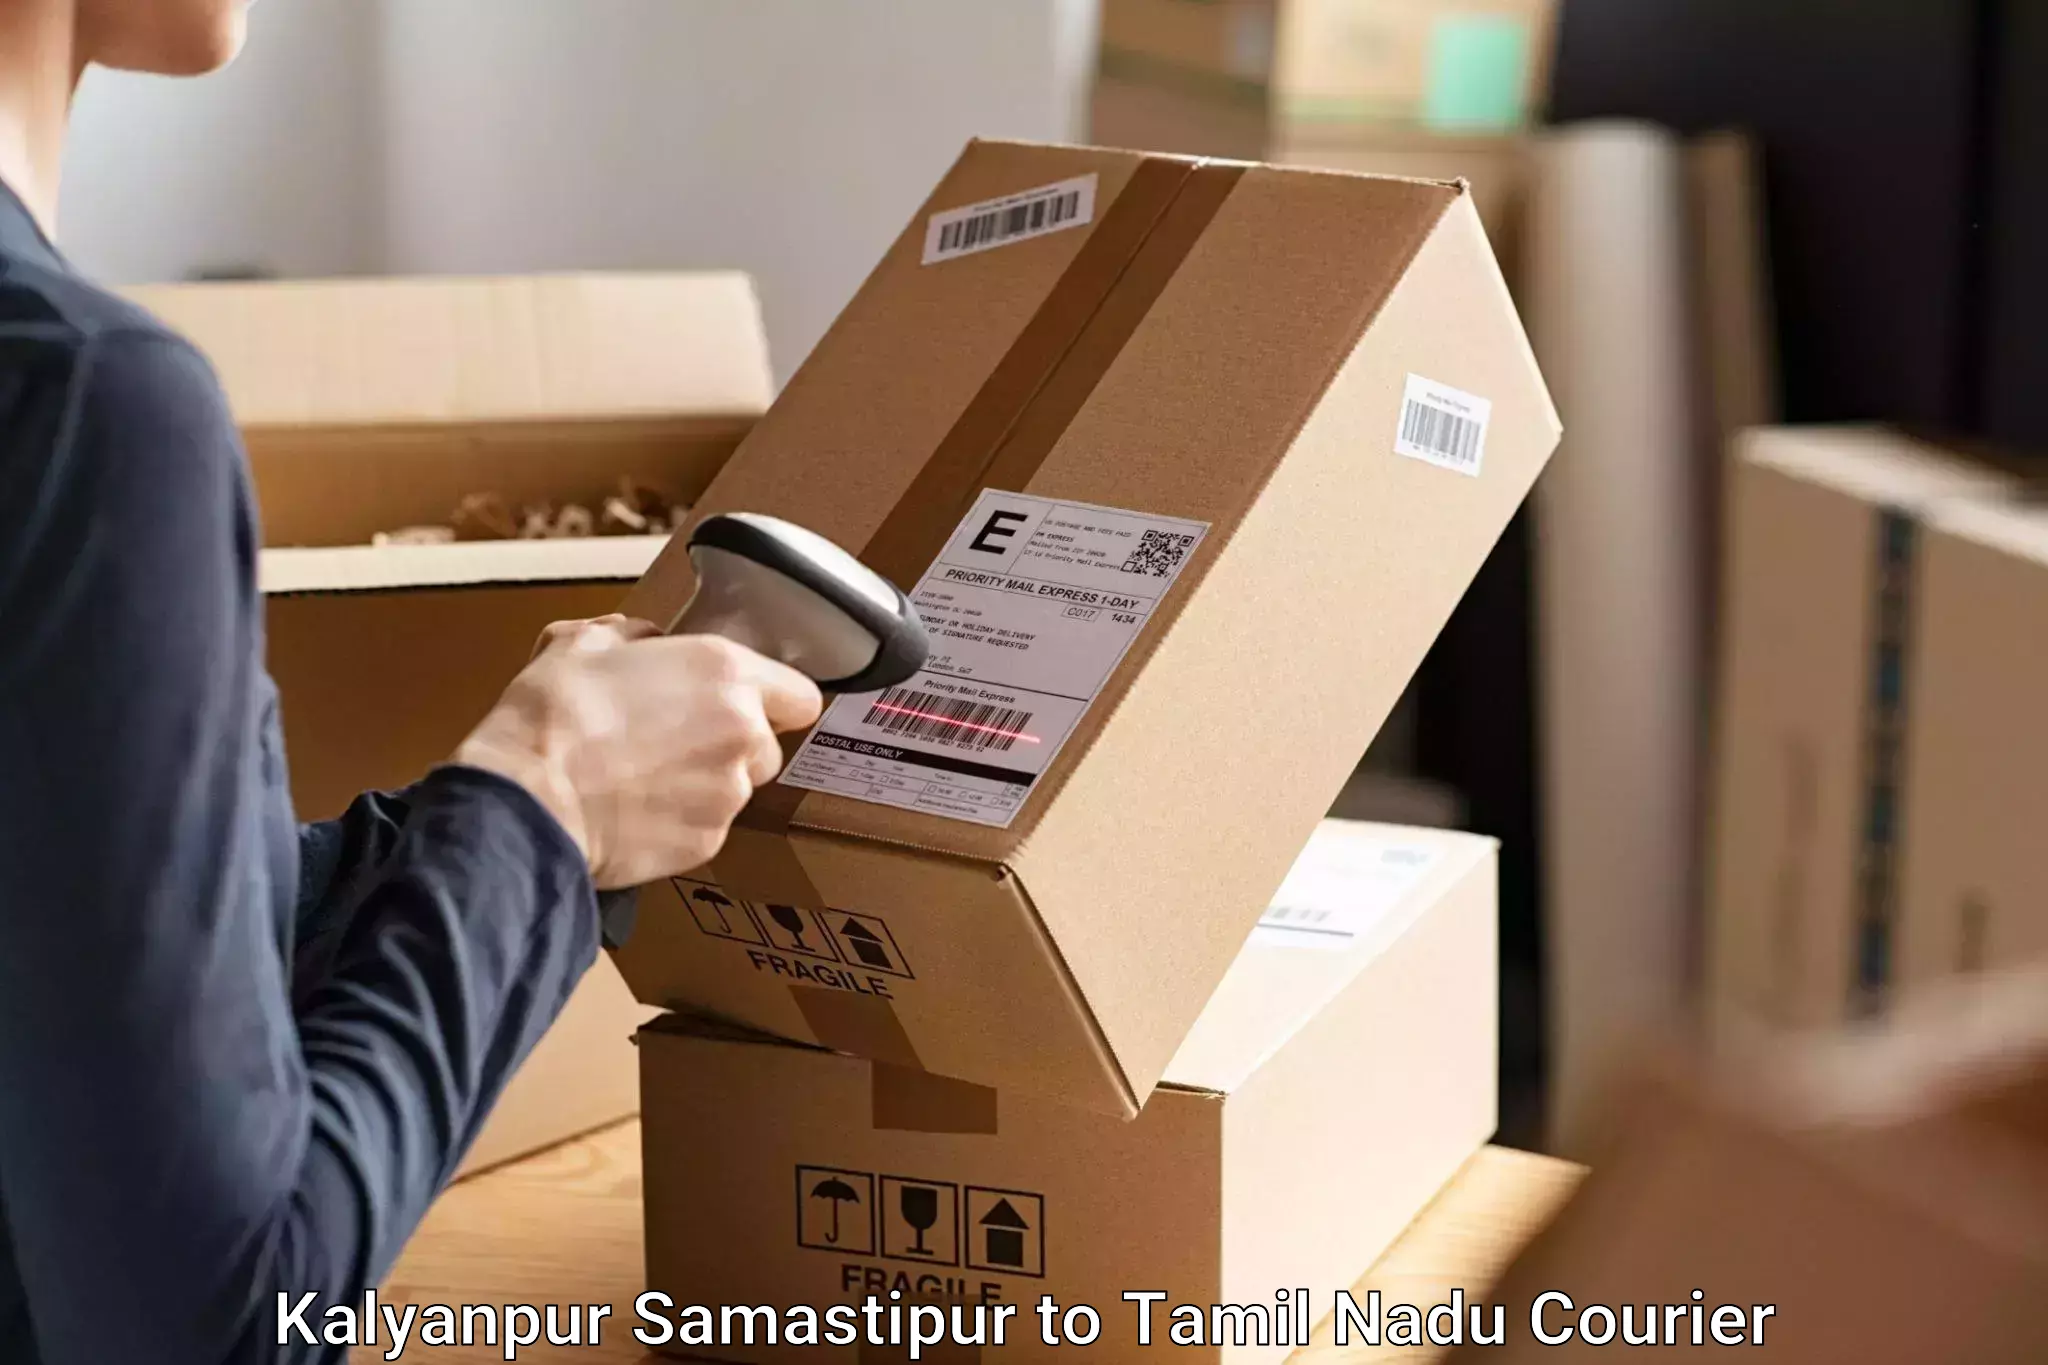 Baggage shipping optimization Kalyanpur Samastipur to Tiruchi